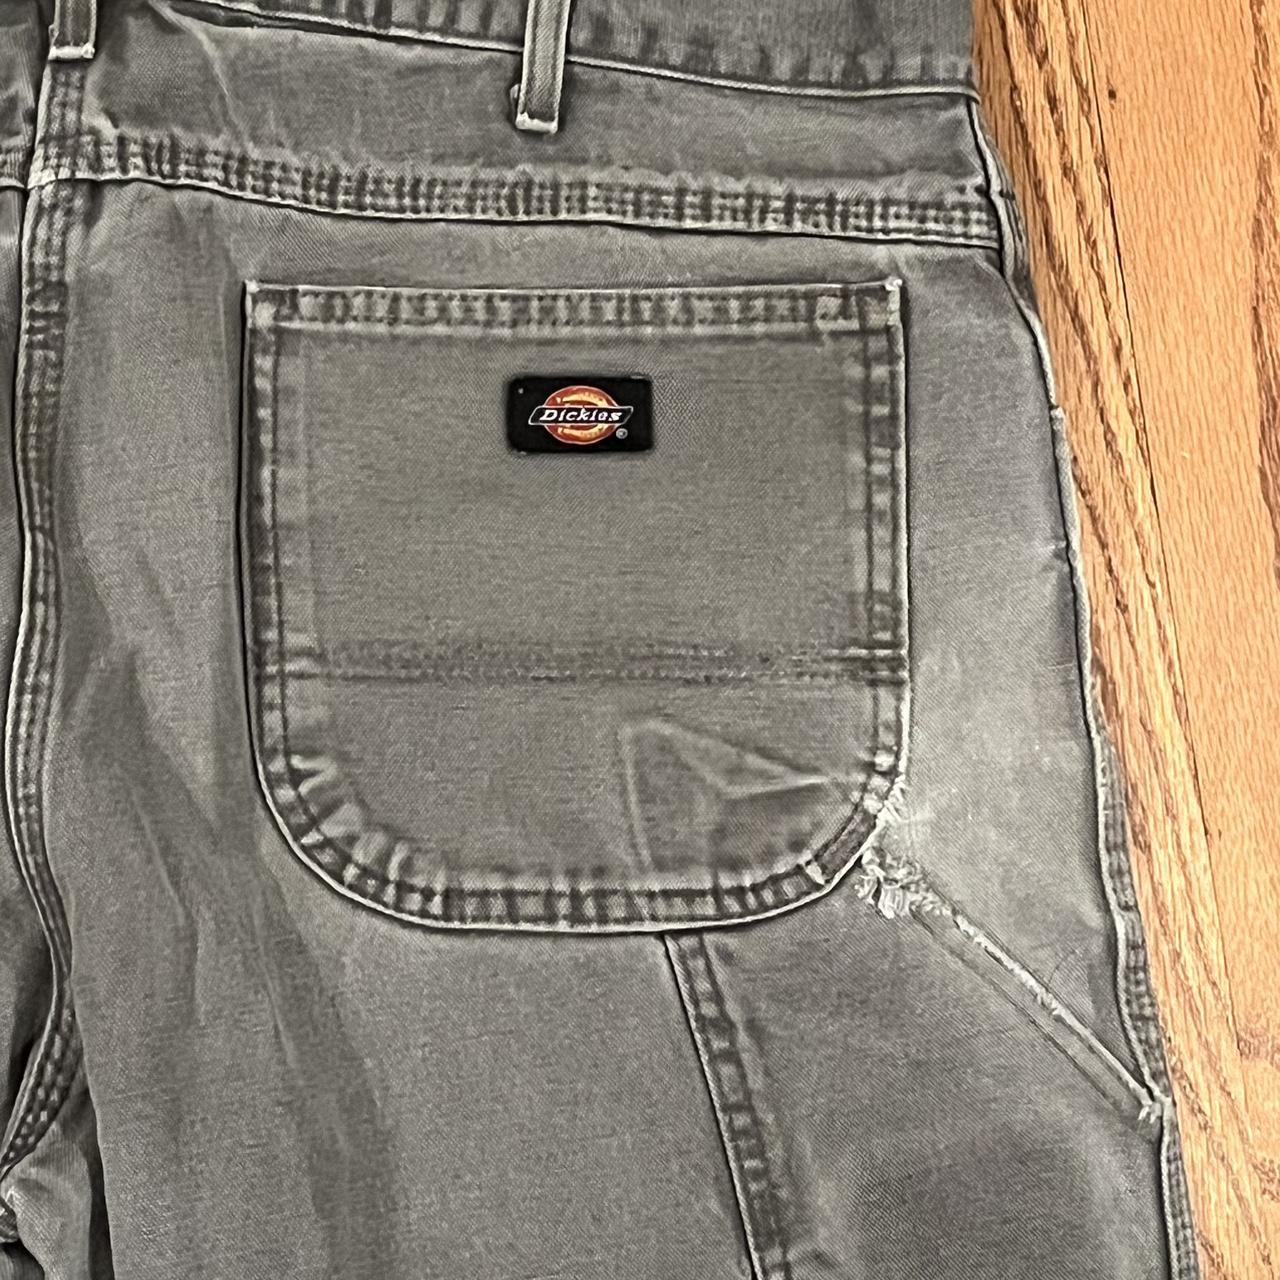 Vintage Dickies work pants size... - Depop